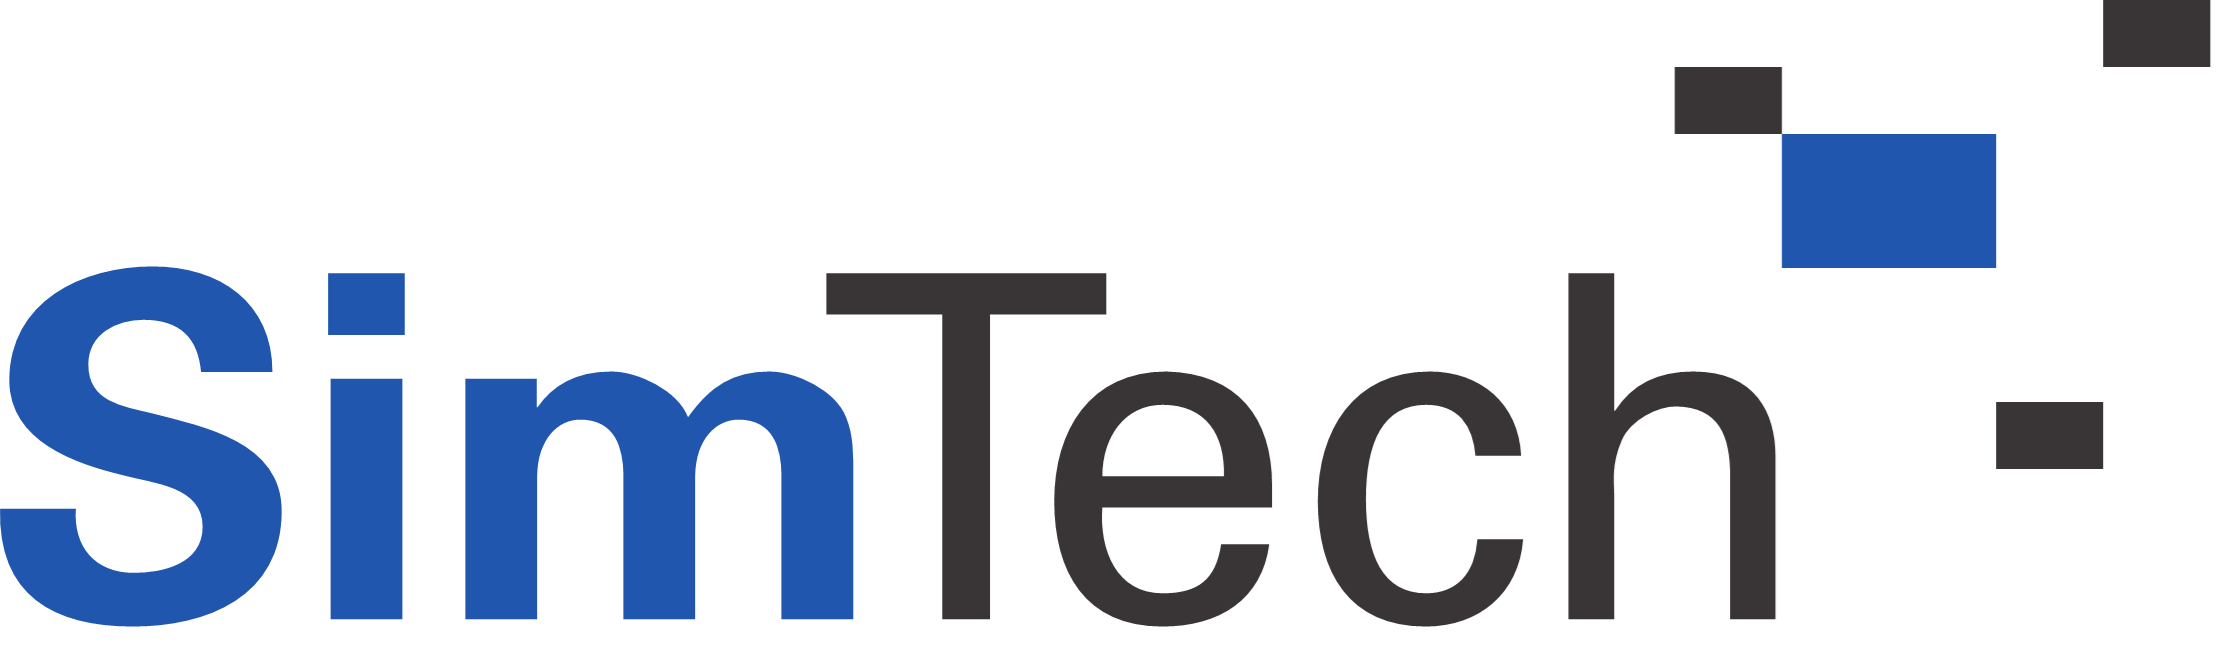 Simtech_logo.png